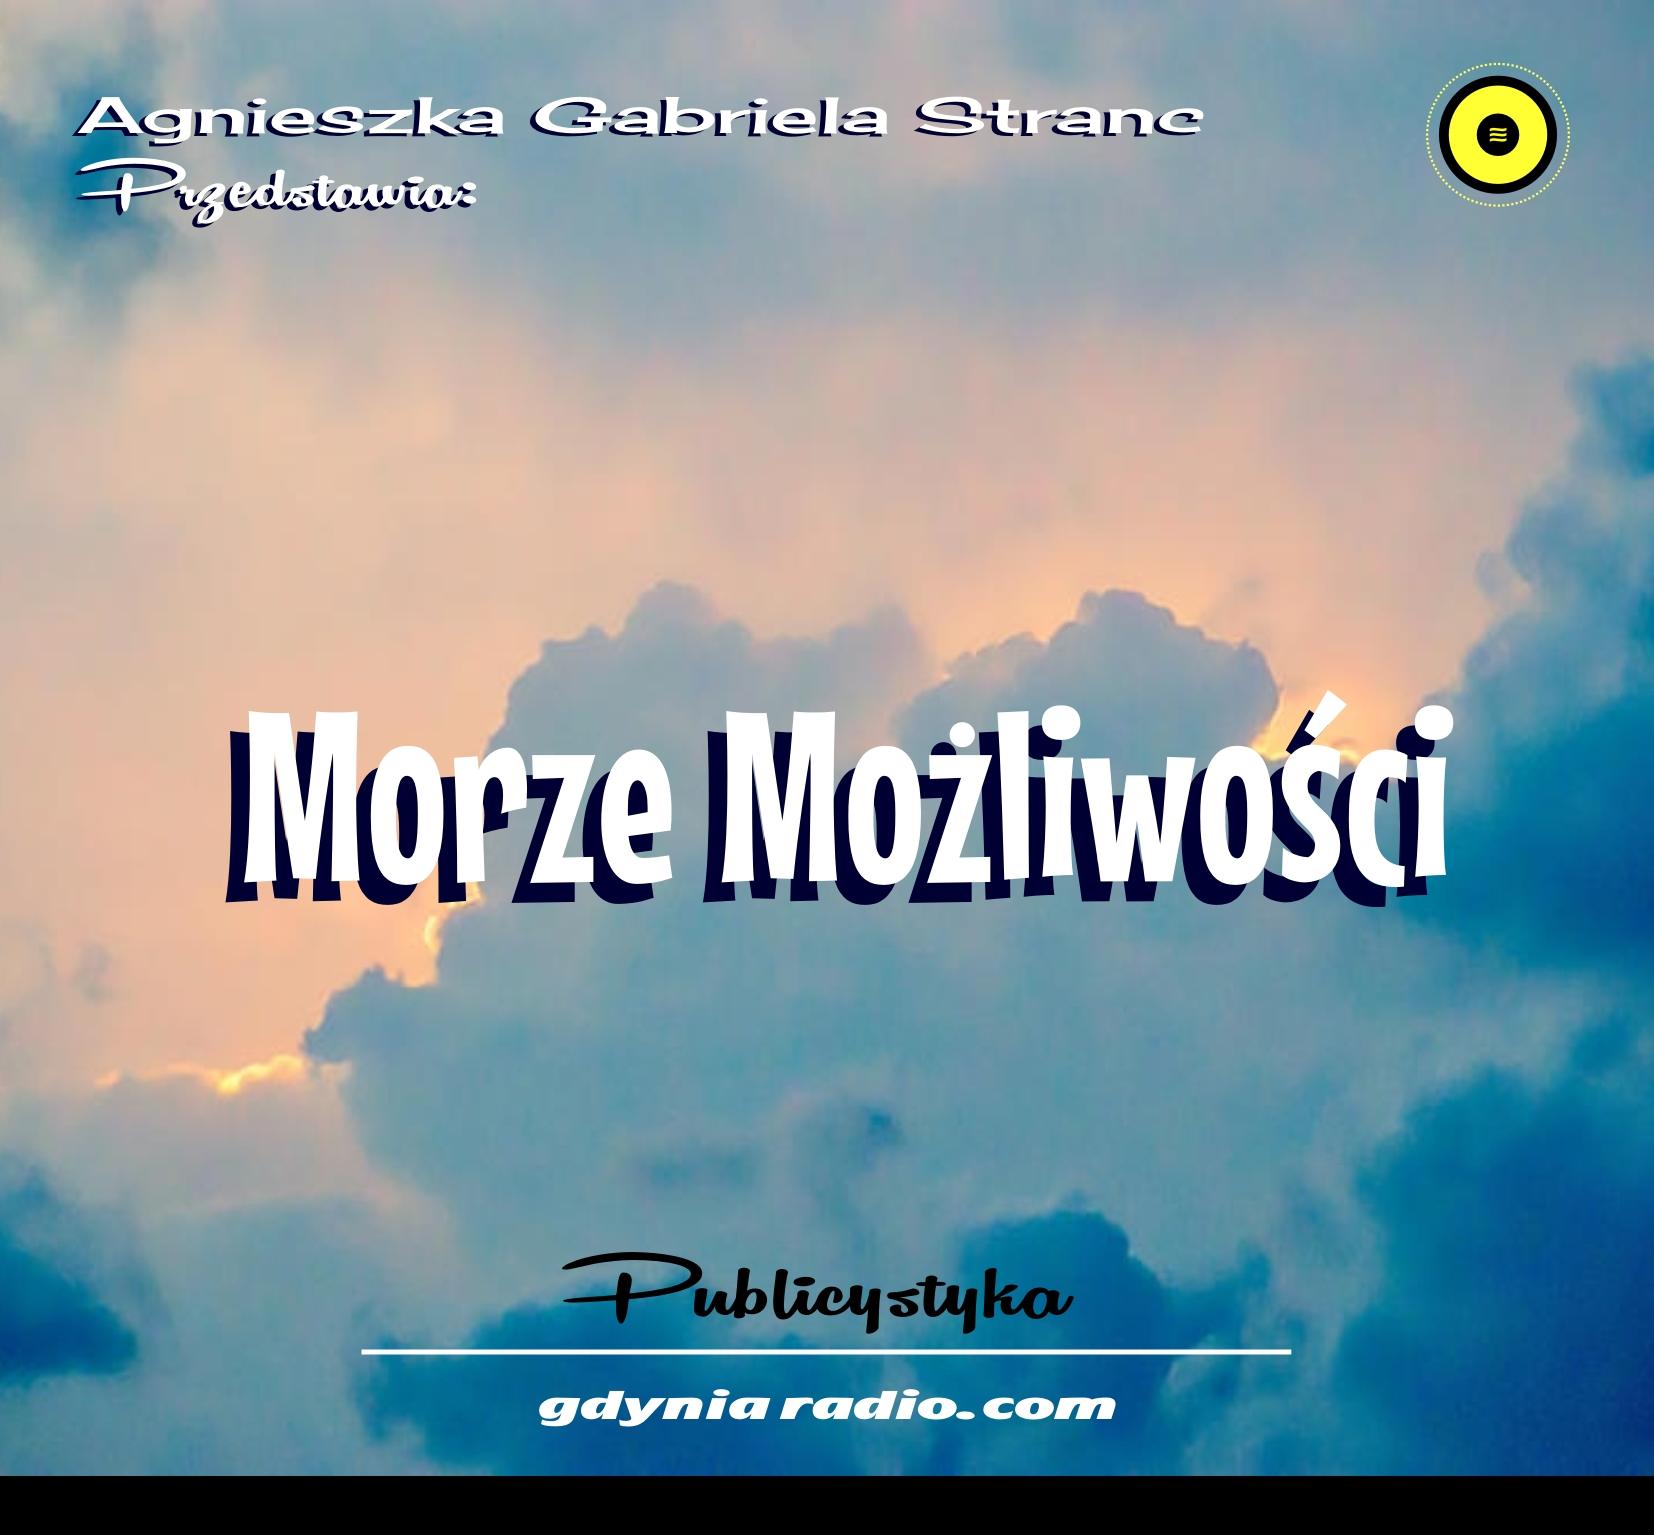 Gdynia Radio -2021- Moze mozliwosci 5 - Agnieszka Stranc